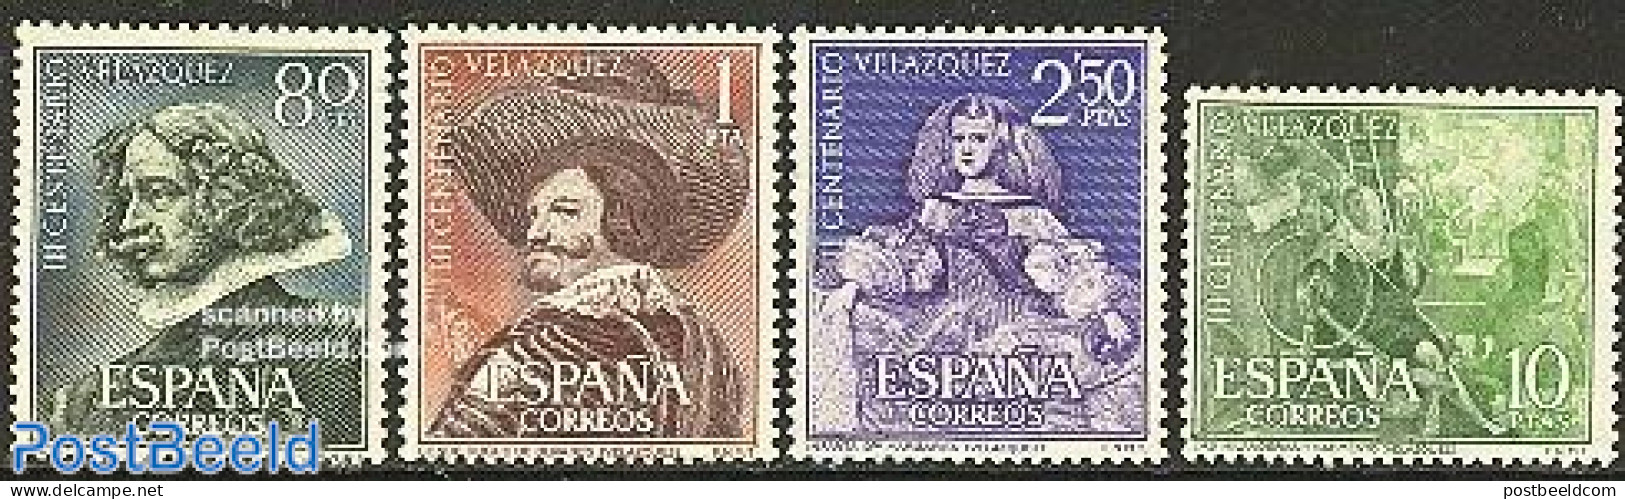 Spain 1961 Velasquez 4v, Unused (hinged), Various - Textiles - Art - Paintings - Nuevos